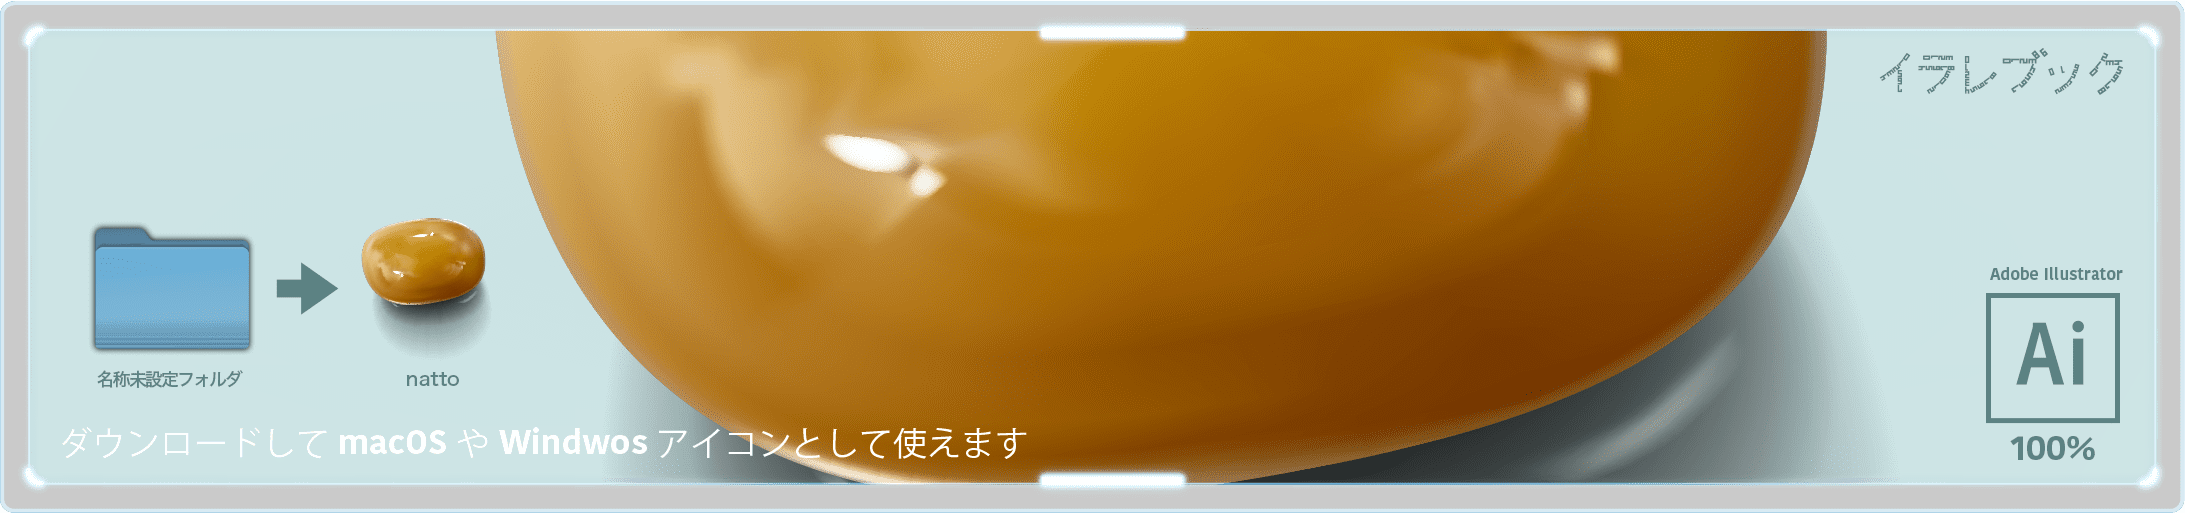 豆腐 イラスト 大豆から にがりの正体 歴史 長所 栄養 描き方 イラレマンガ Food